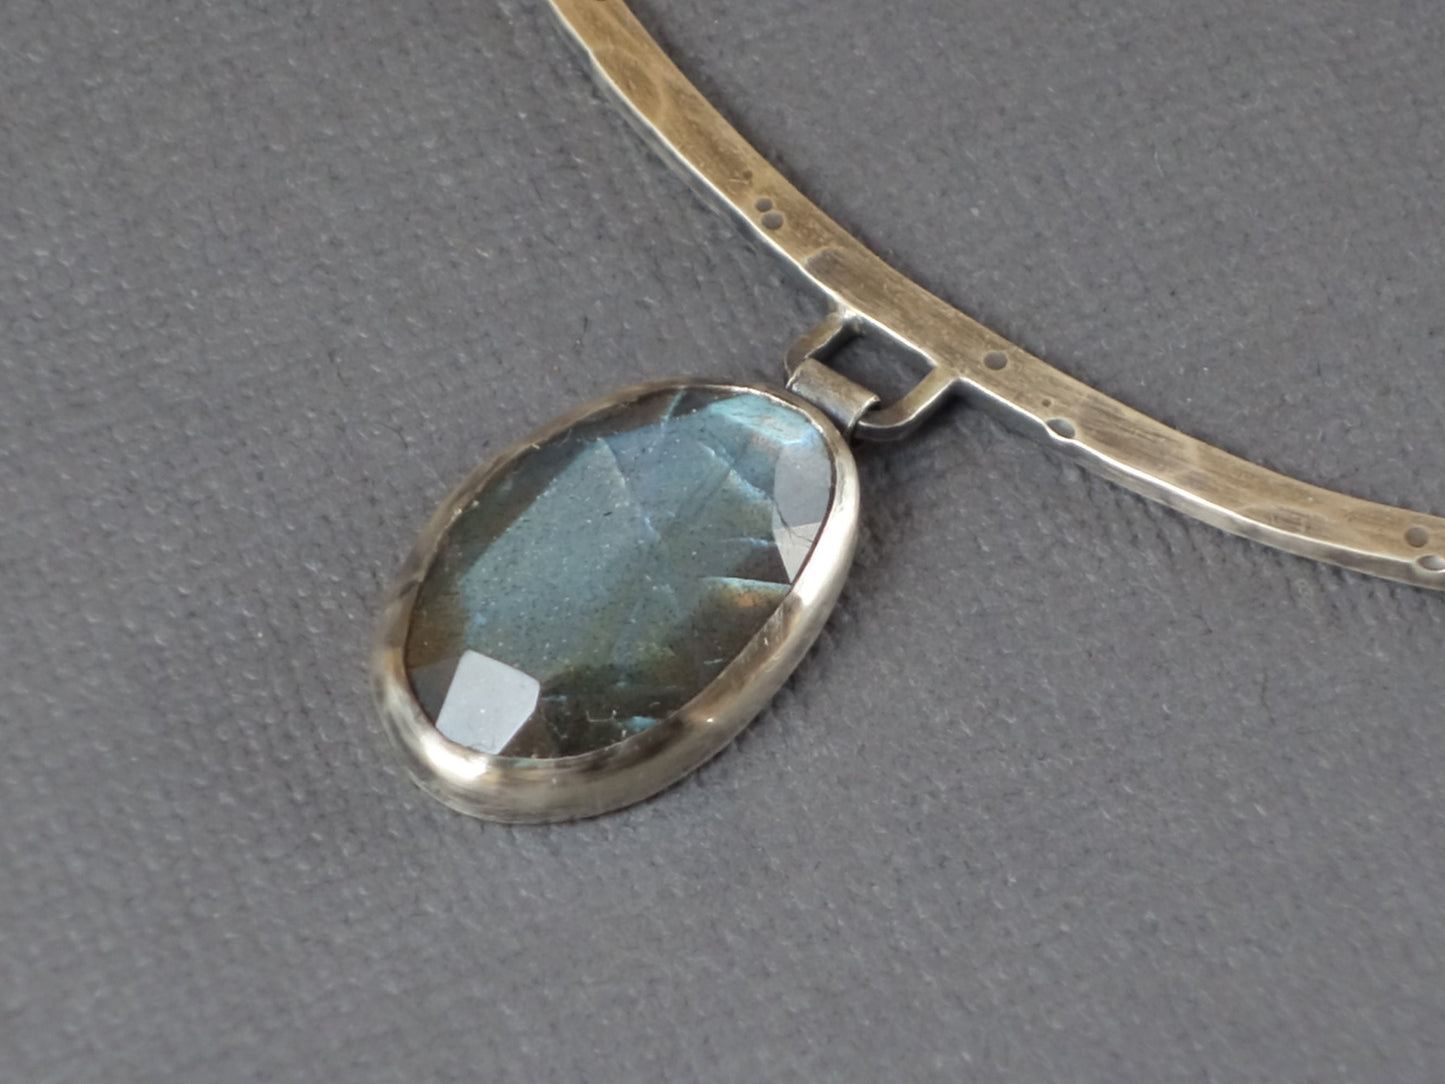 Large Labradorite Metalwork Necklace, Labradorite Pendant, Metalwork Necklace, Distressed Metal Necklace